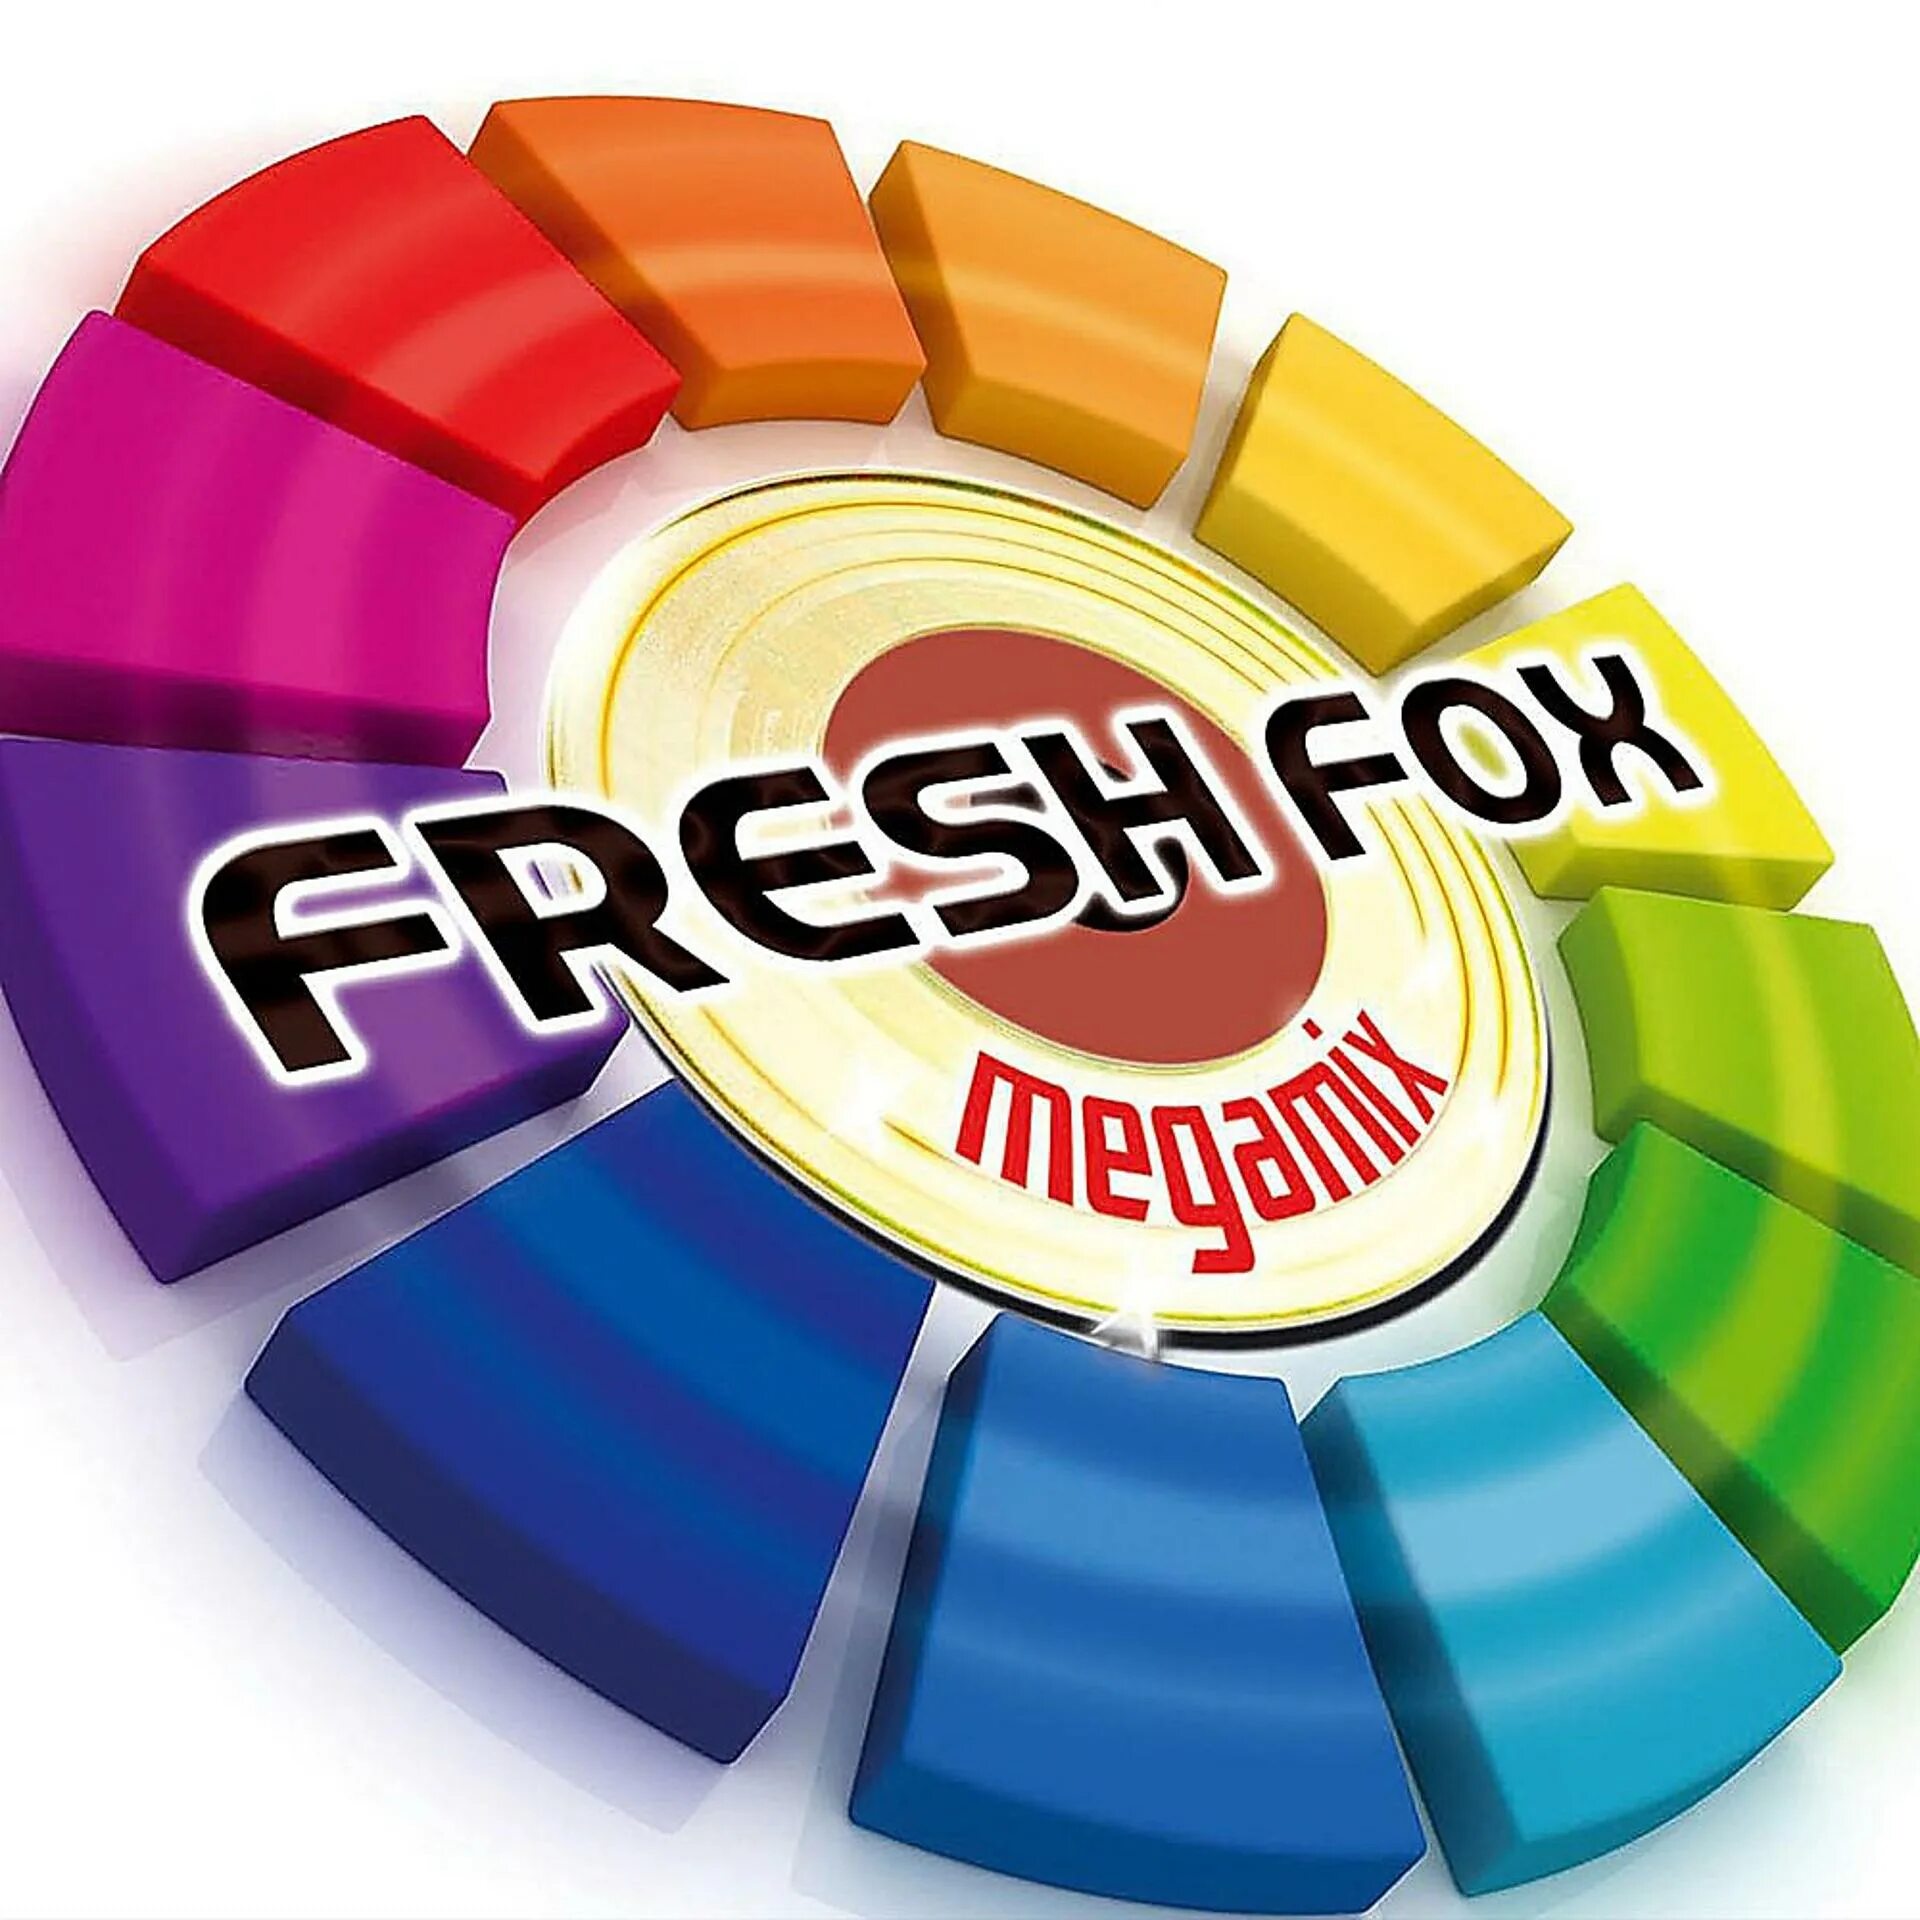 Fresh fox. Fresh Fox Megamix. ООО мегамикс. Fresh Fox 2010.Megamix. Мега Мих.